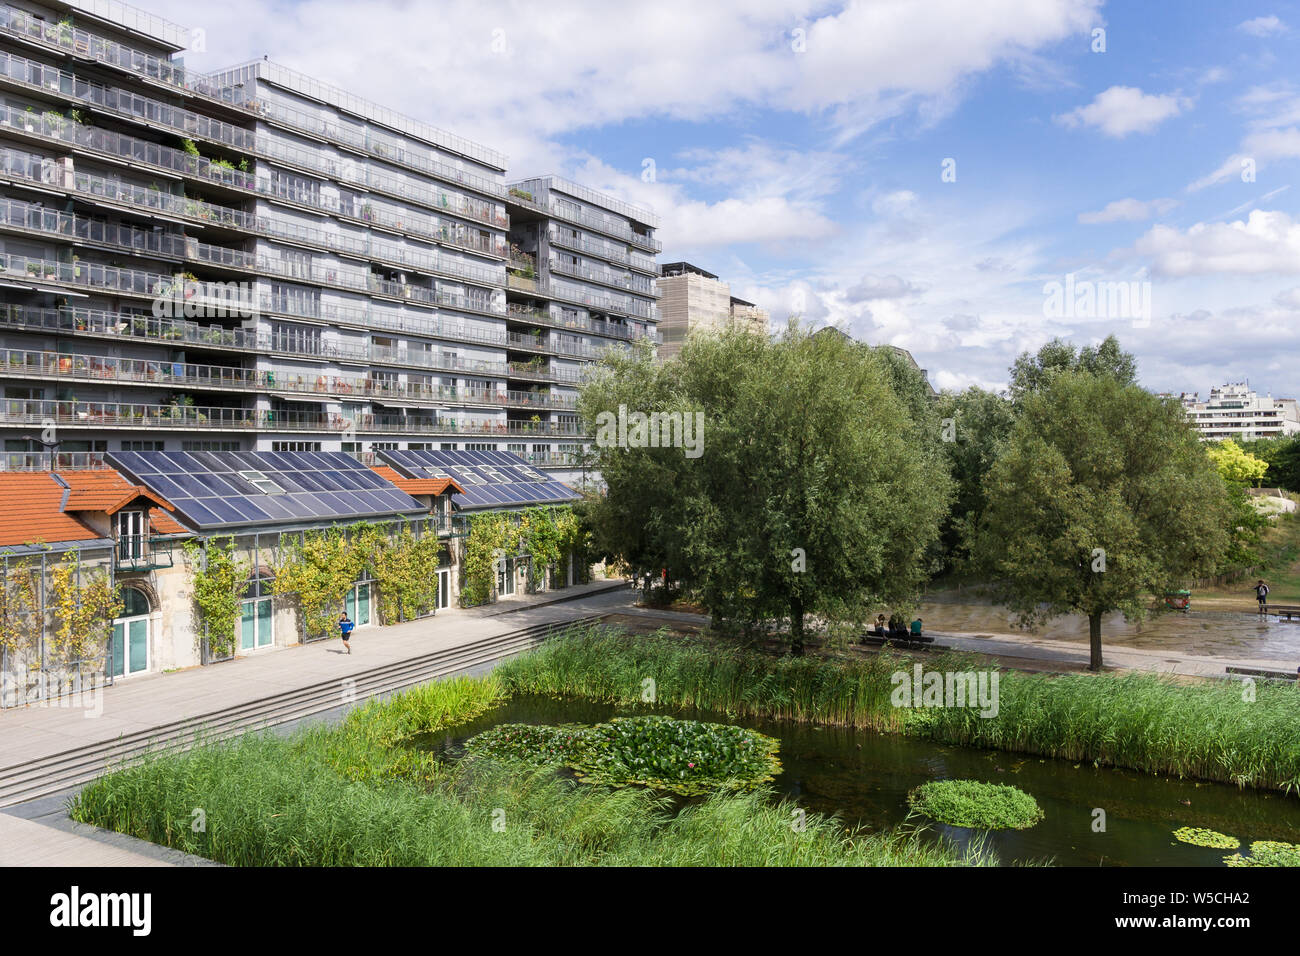 Paris eco - Bezirk - Clichy-Batignolles im 17. Arrondissement befindet sich entwickelte eco - Bezirke (eco Quartiers) in Paris, Frankreich, Europa. Stockfoto